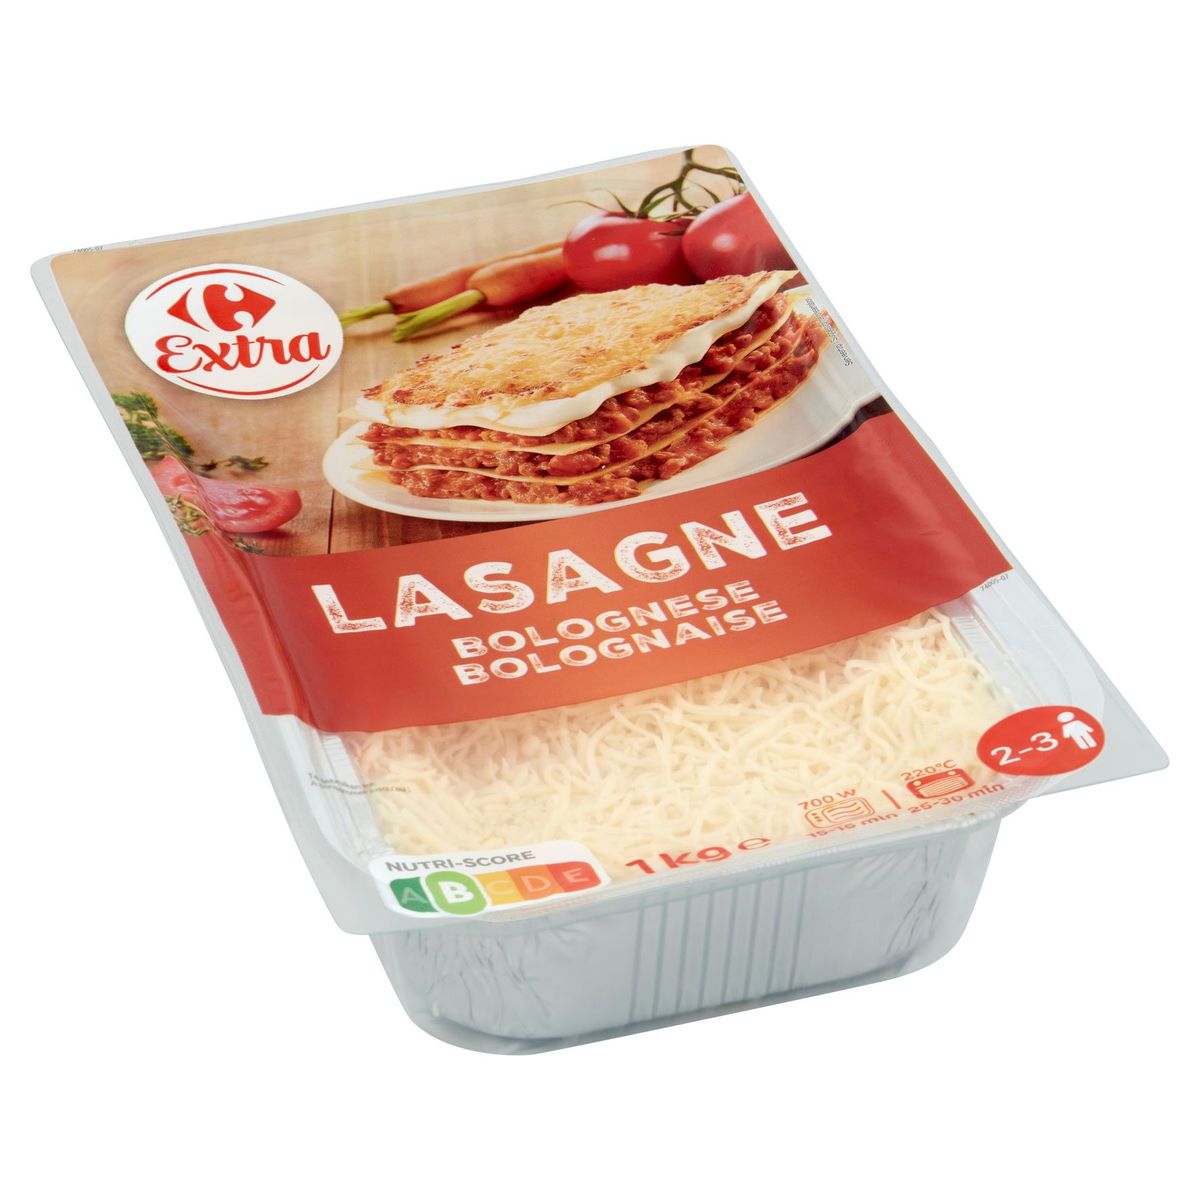 Carrefour Extra Lasagne Bolognaise 1 kg